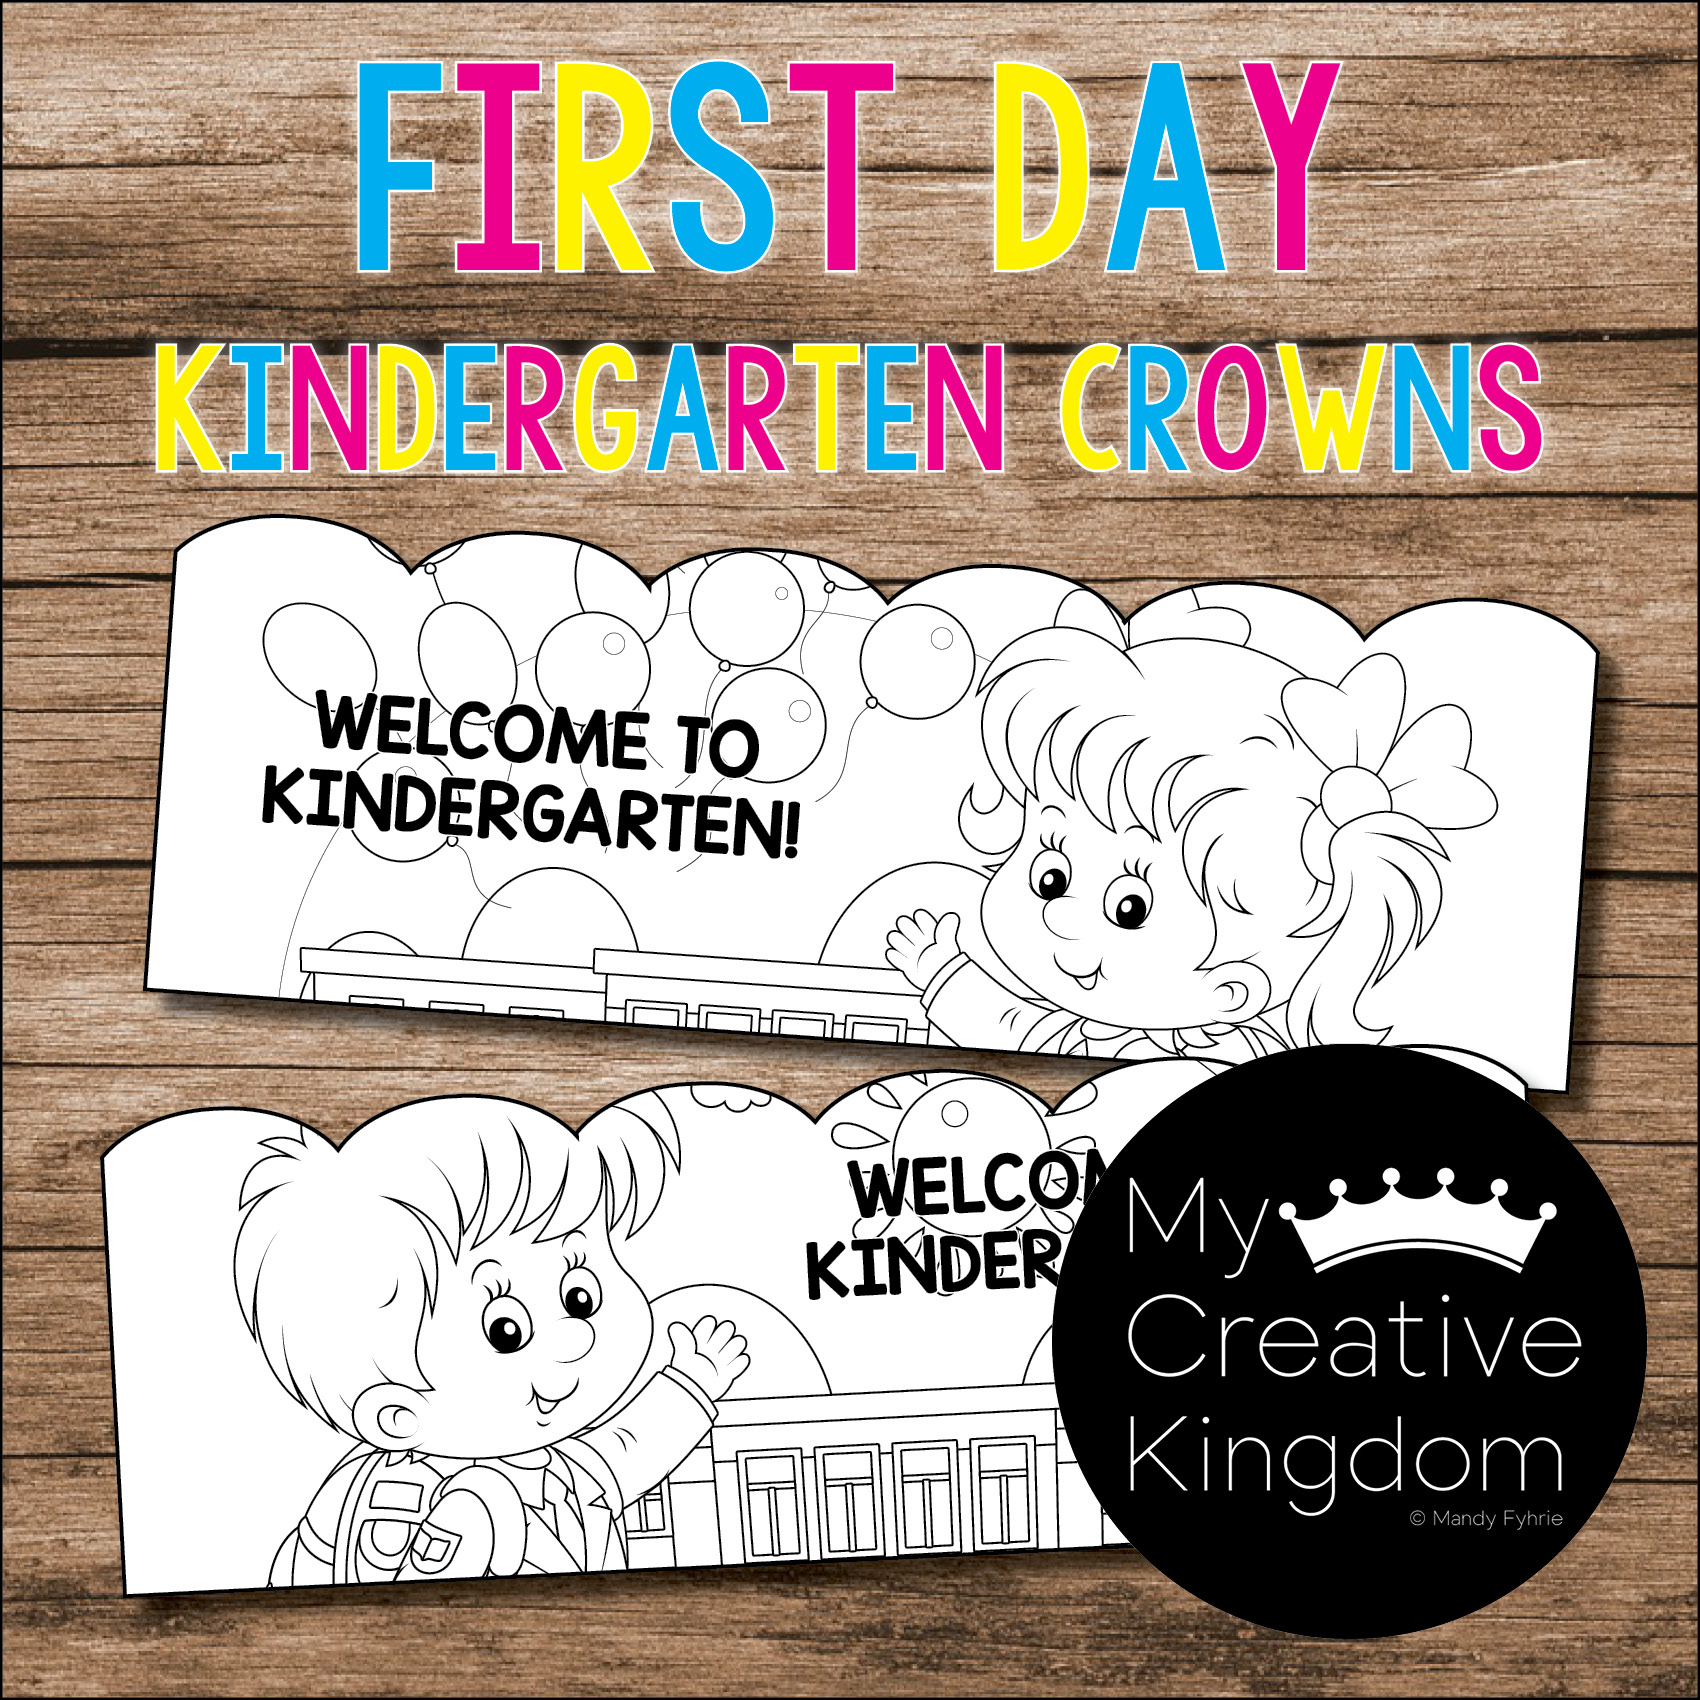 First Day Of Kindergarten Crowns My Creative Kingdom